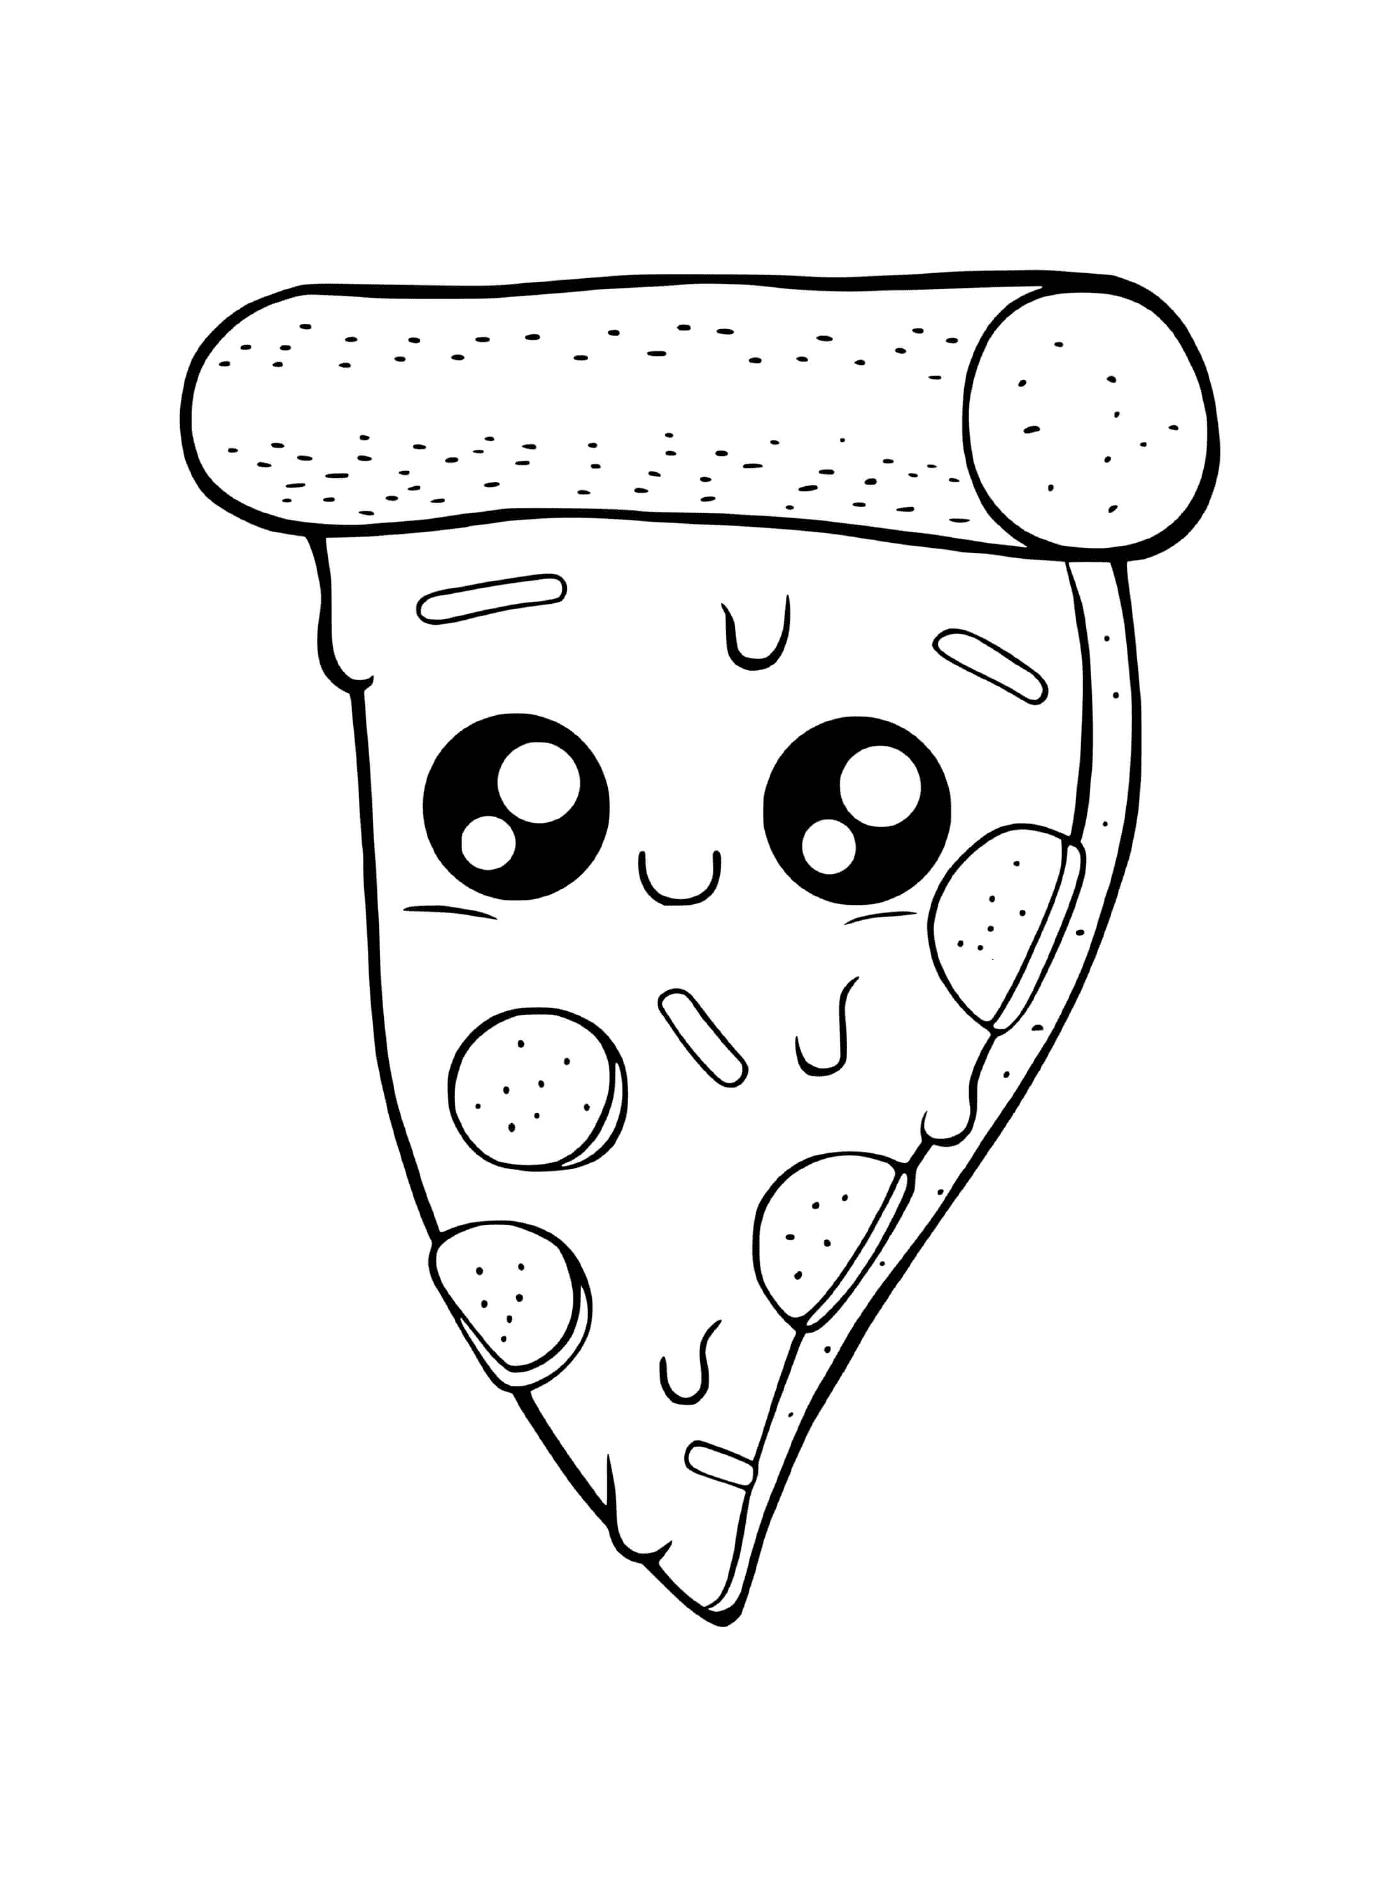  披萨加融化奶酪 